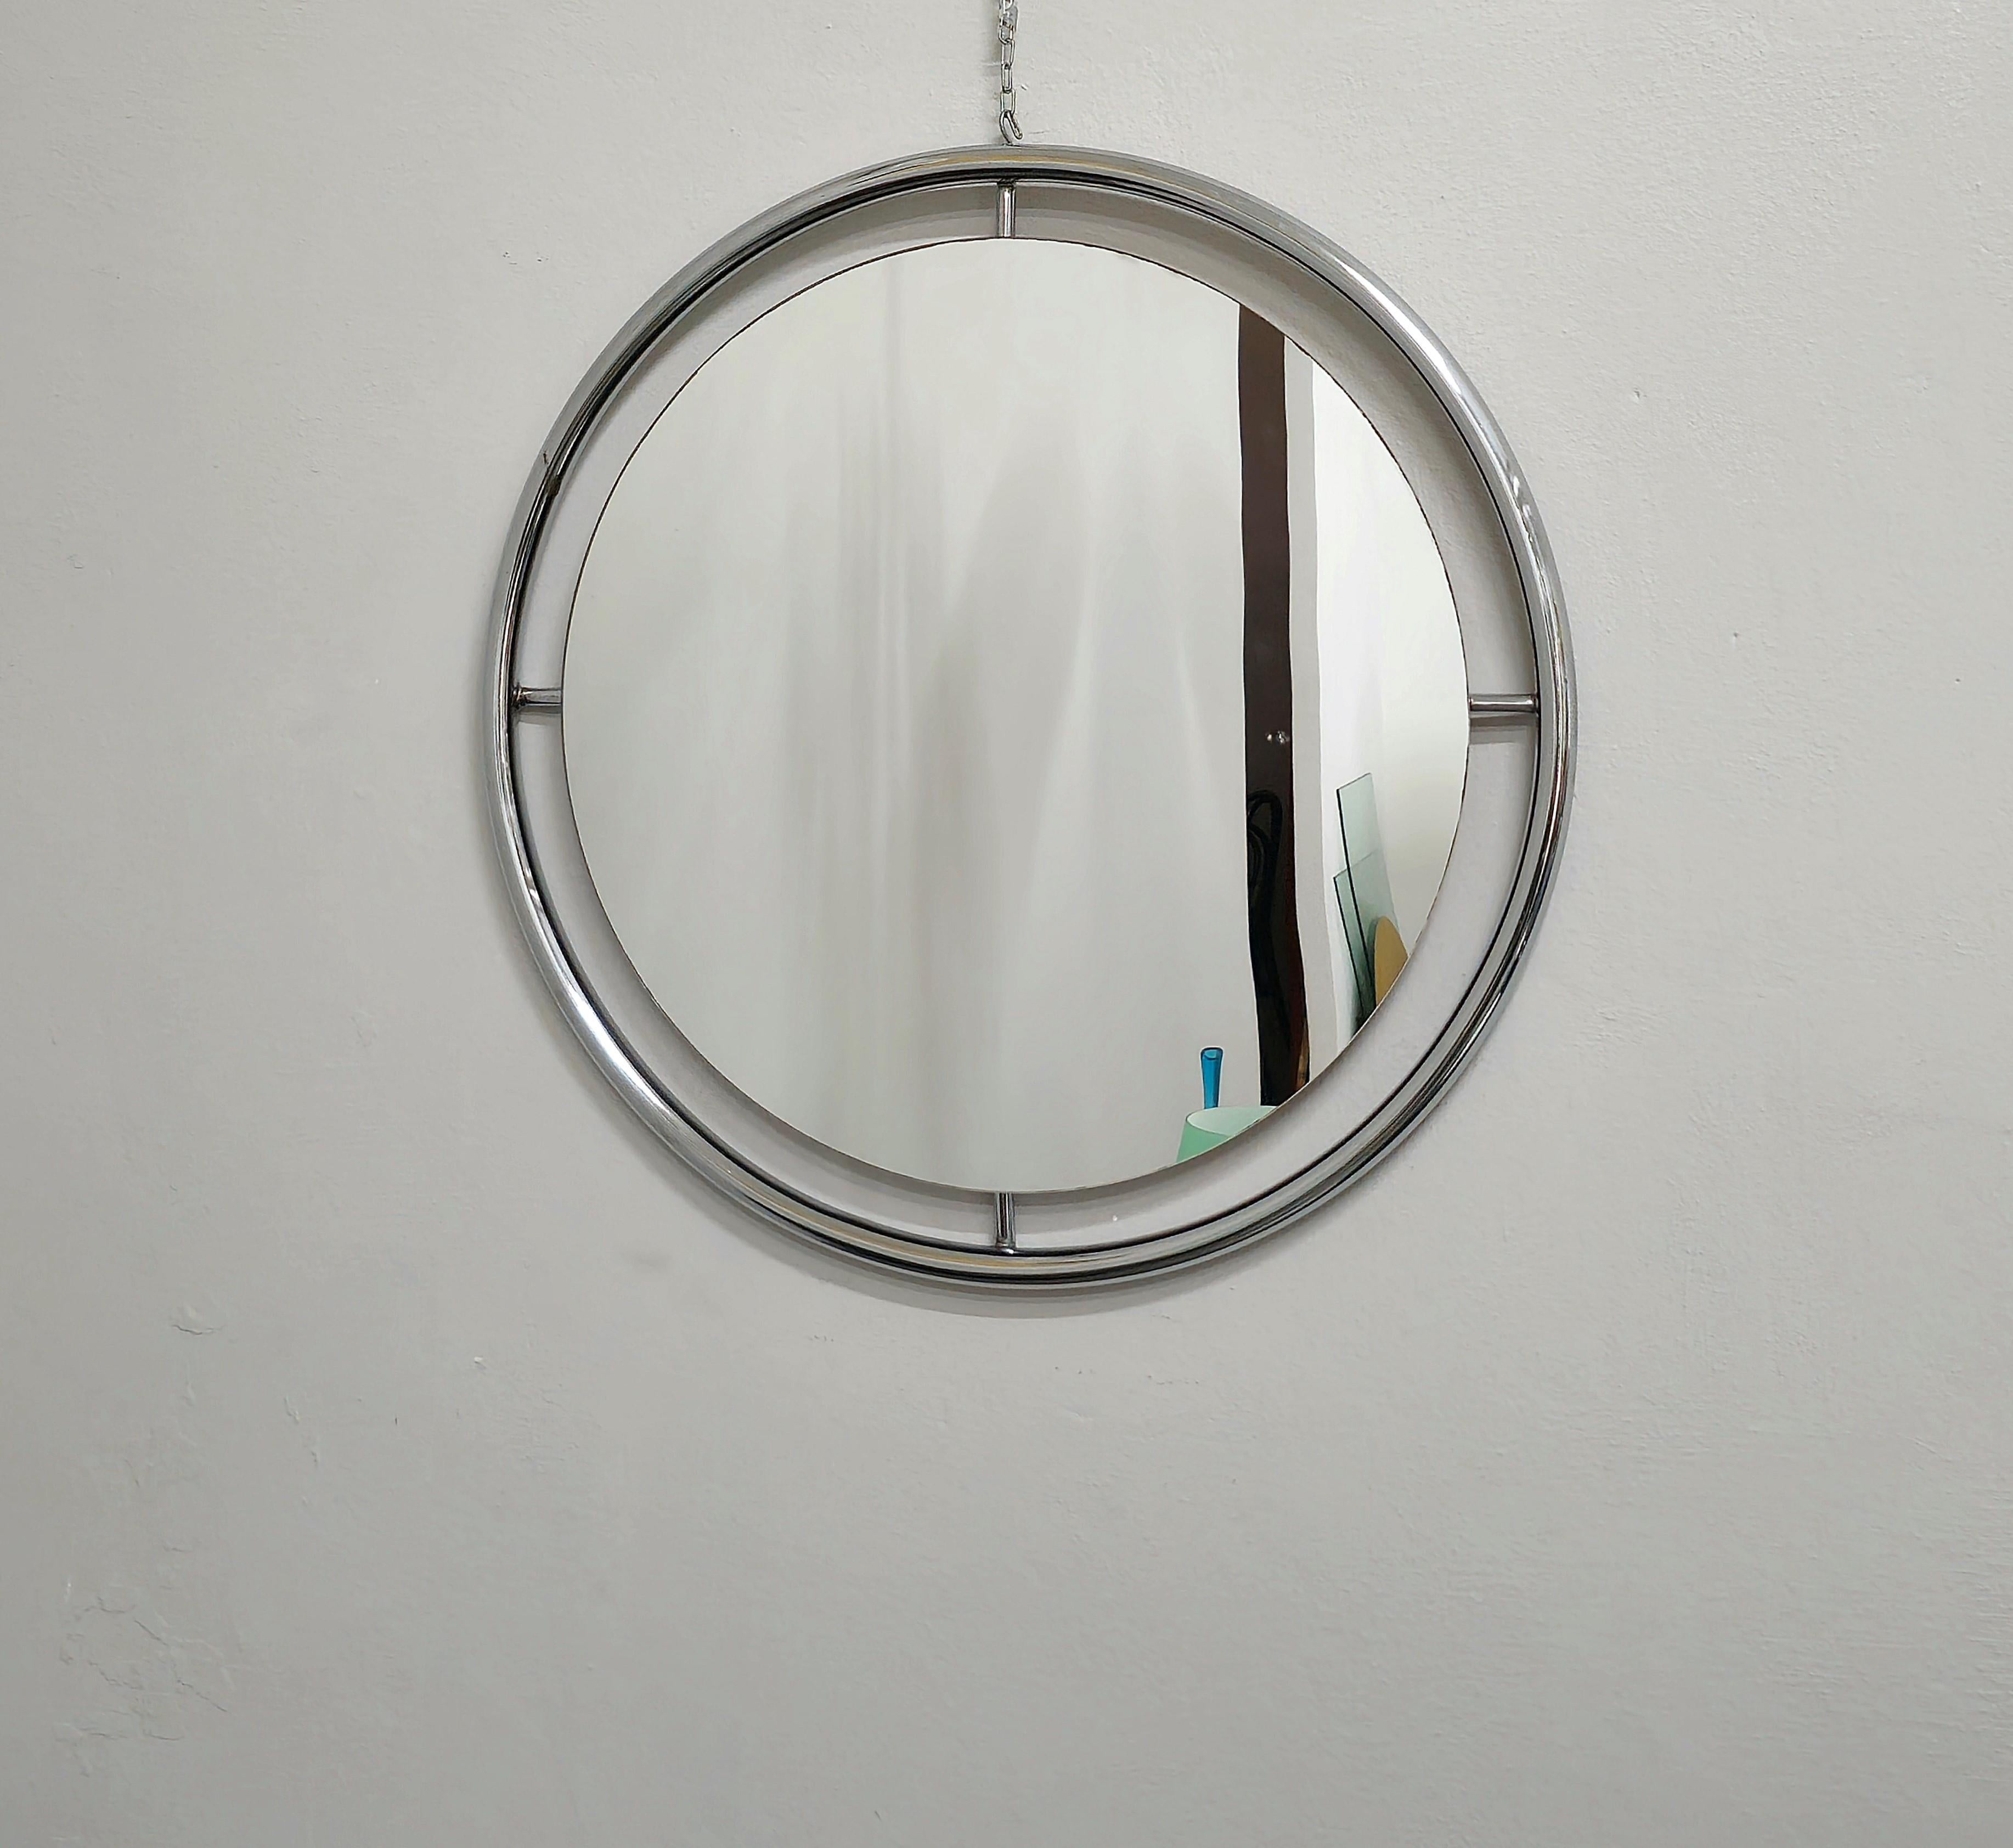 Miroir mural circulaire en métal tubulaire chromé. Fabriqué en Italie dans les années 70.



Note : Nous essayons d'offrir à nos clients un excellent service, même pour les envois dans le monde entier, en collaborant avec l'un des meilleurs